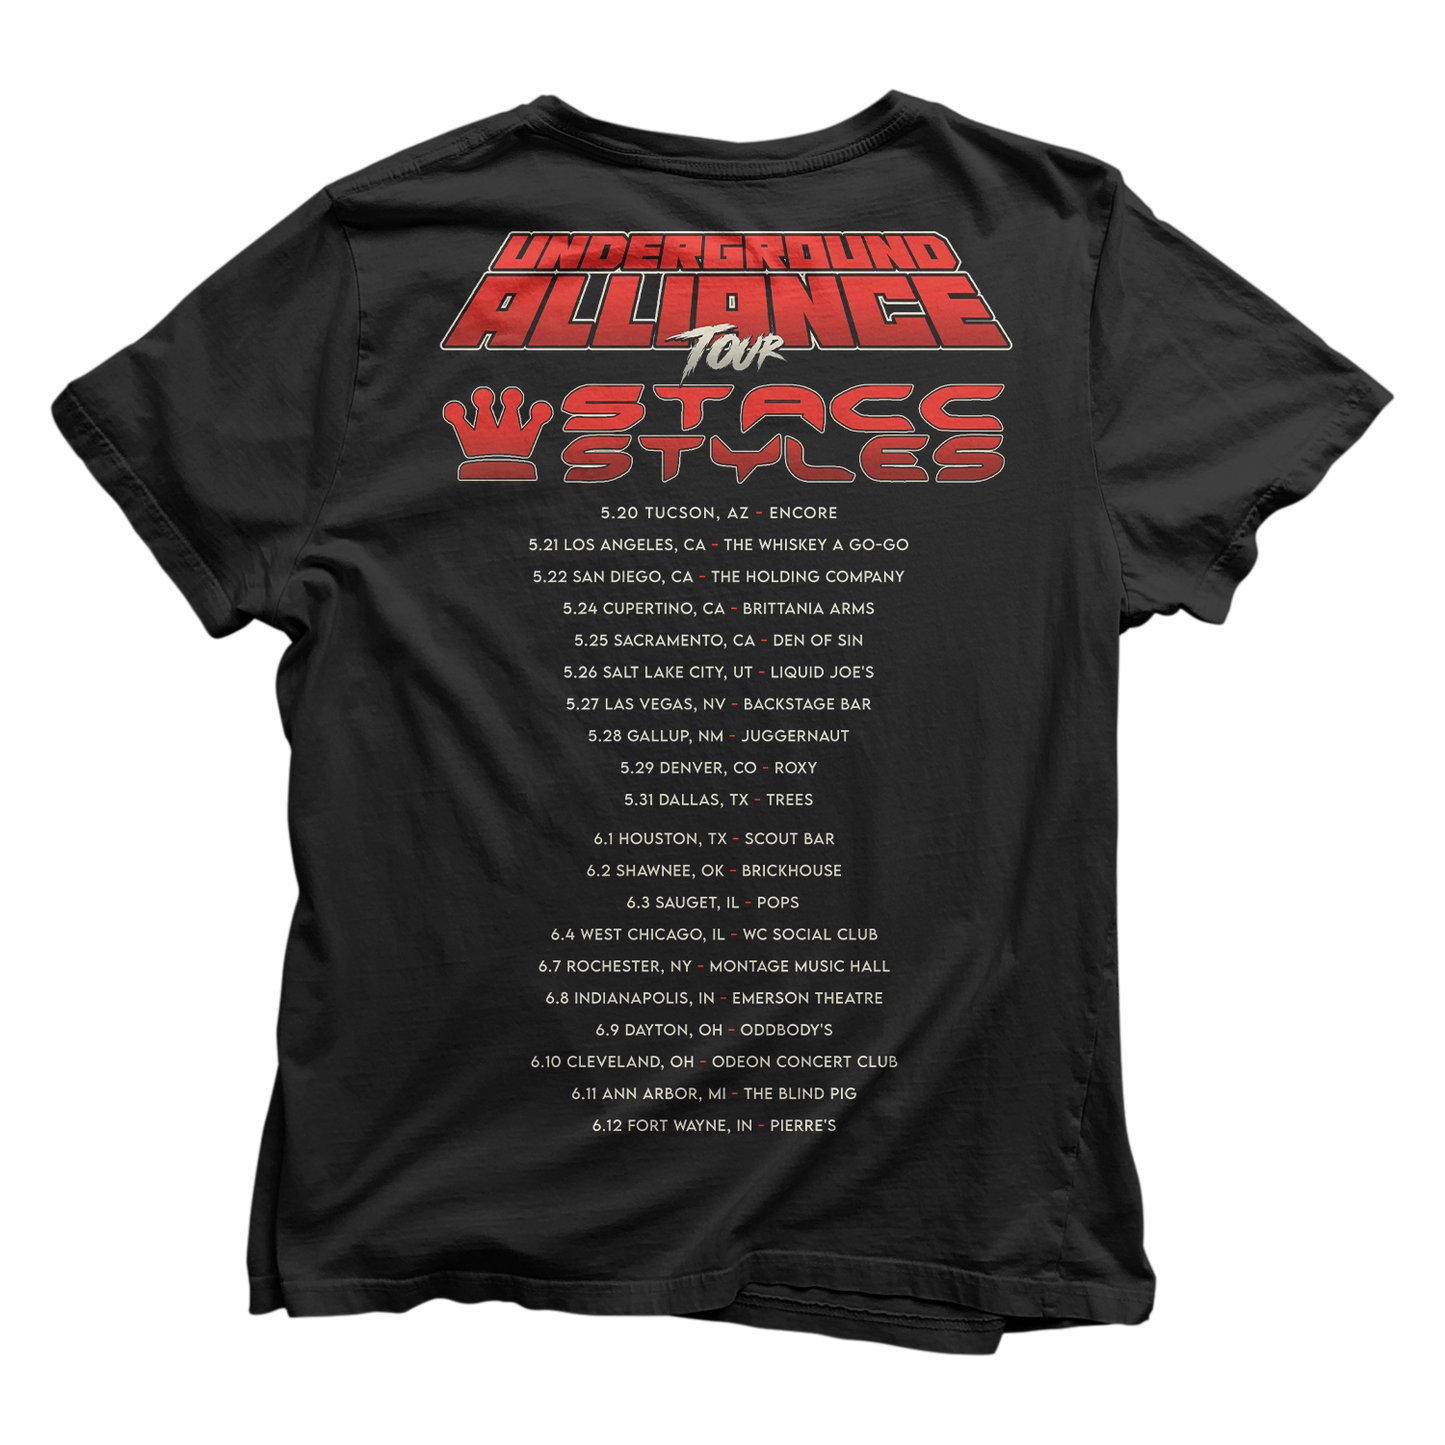 Stacc Styles (Underground Alliance Tour) T-Shirt